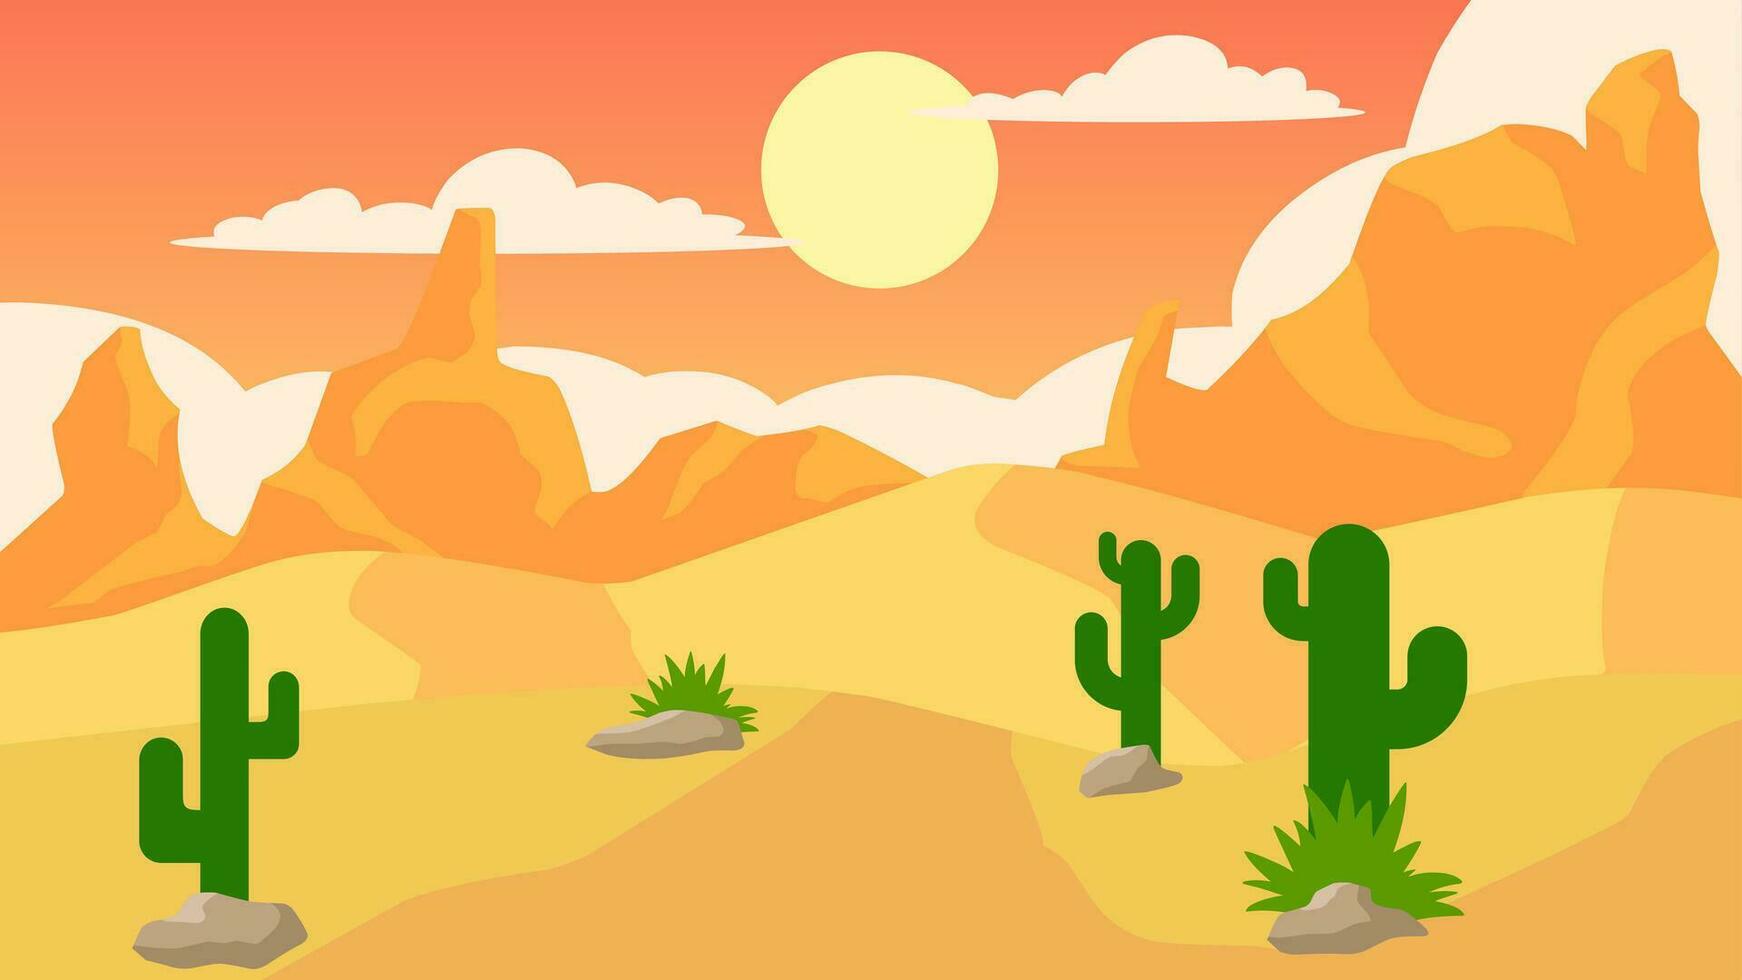 öken- landskap vektor illustration. kanjon öken- landskap med kaktus, bergsrygg och stenar. amerikan öken- landskap för bakgrund, tapet, visa eller landning sida. illustration av vild väst